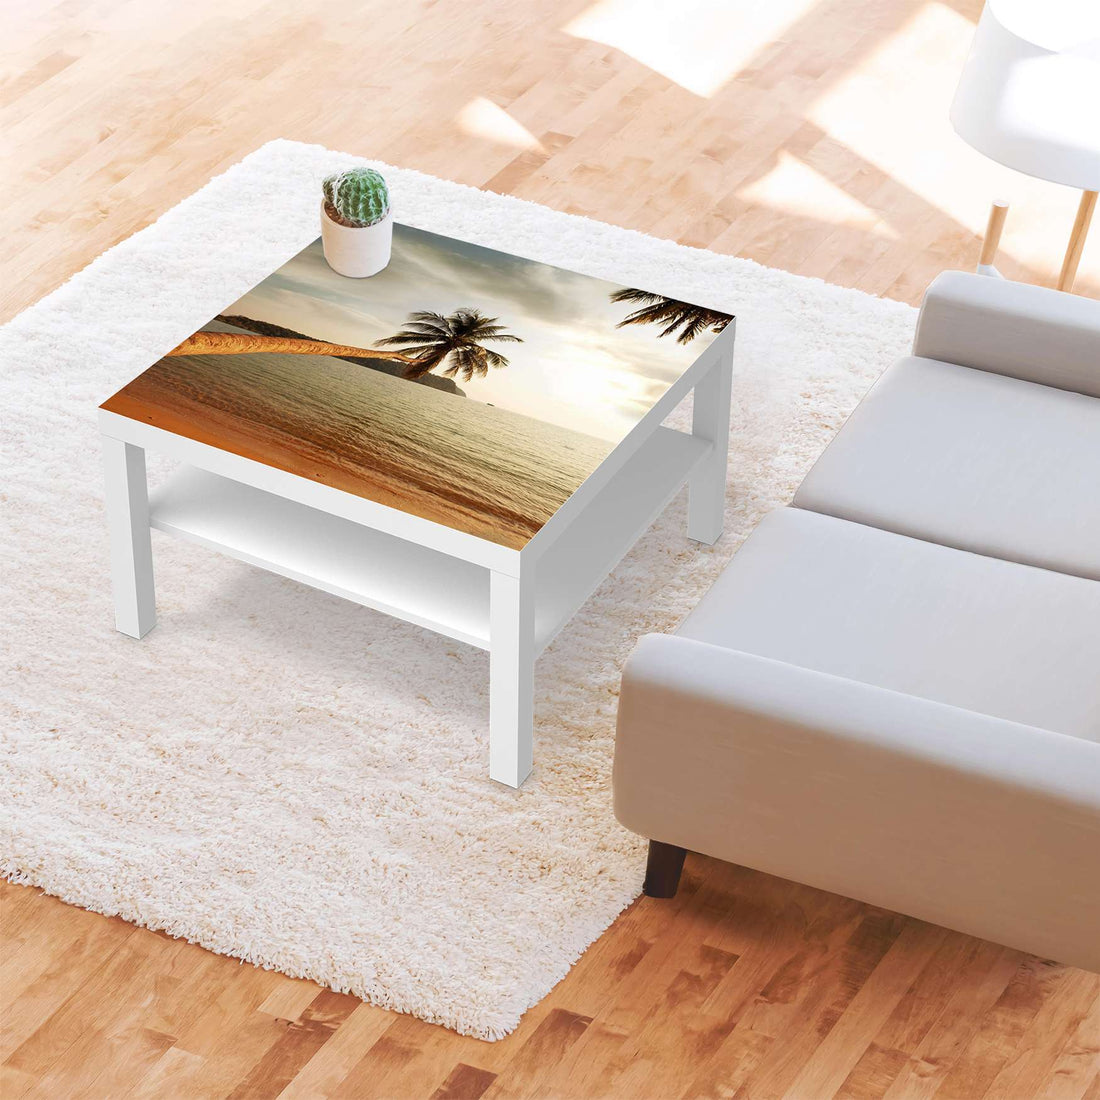 Selbstklebende Folie Paradise - IKEA Lack Tisch 78x78 cm - Wohnzimmer